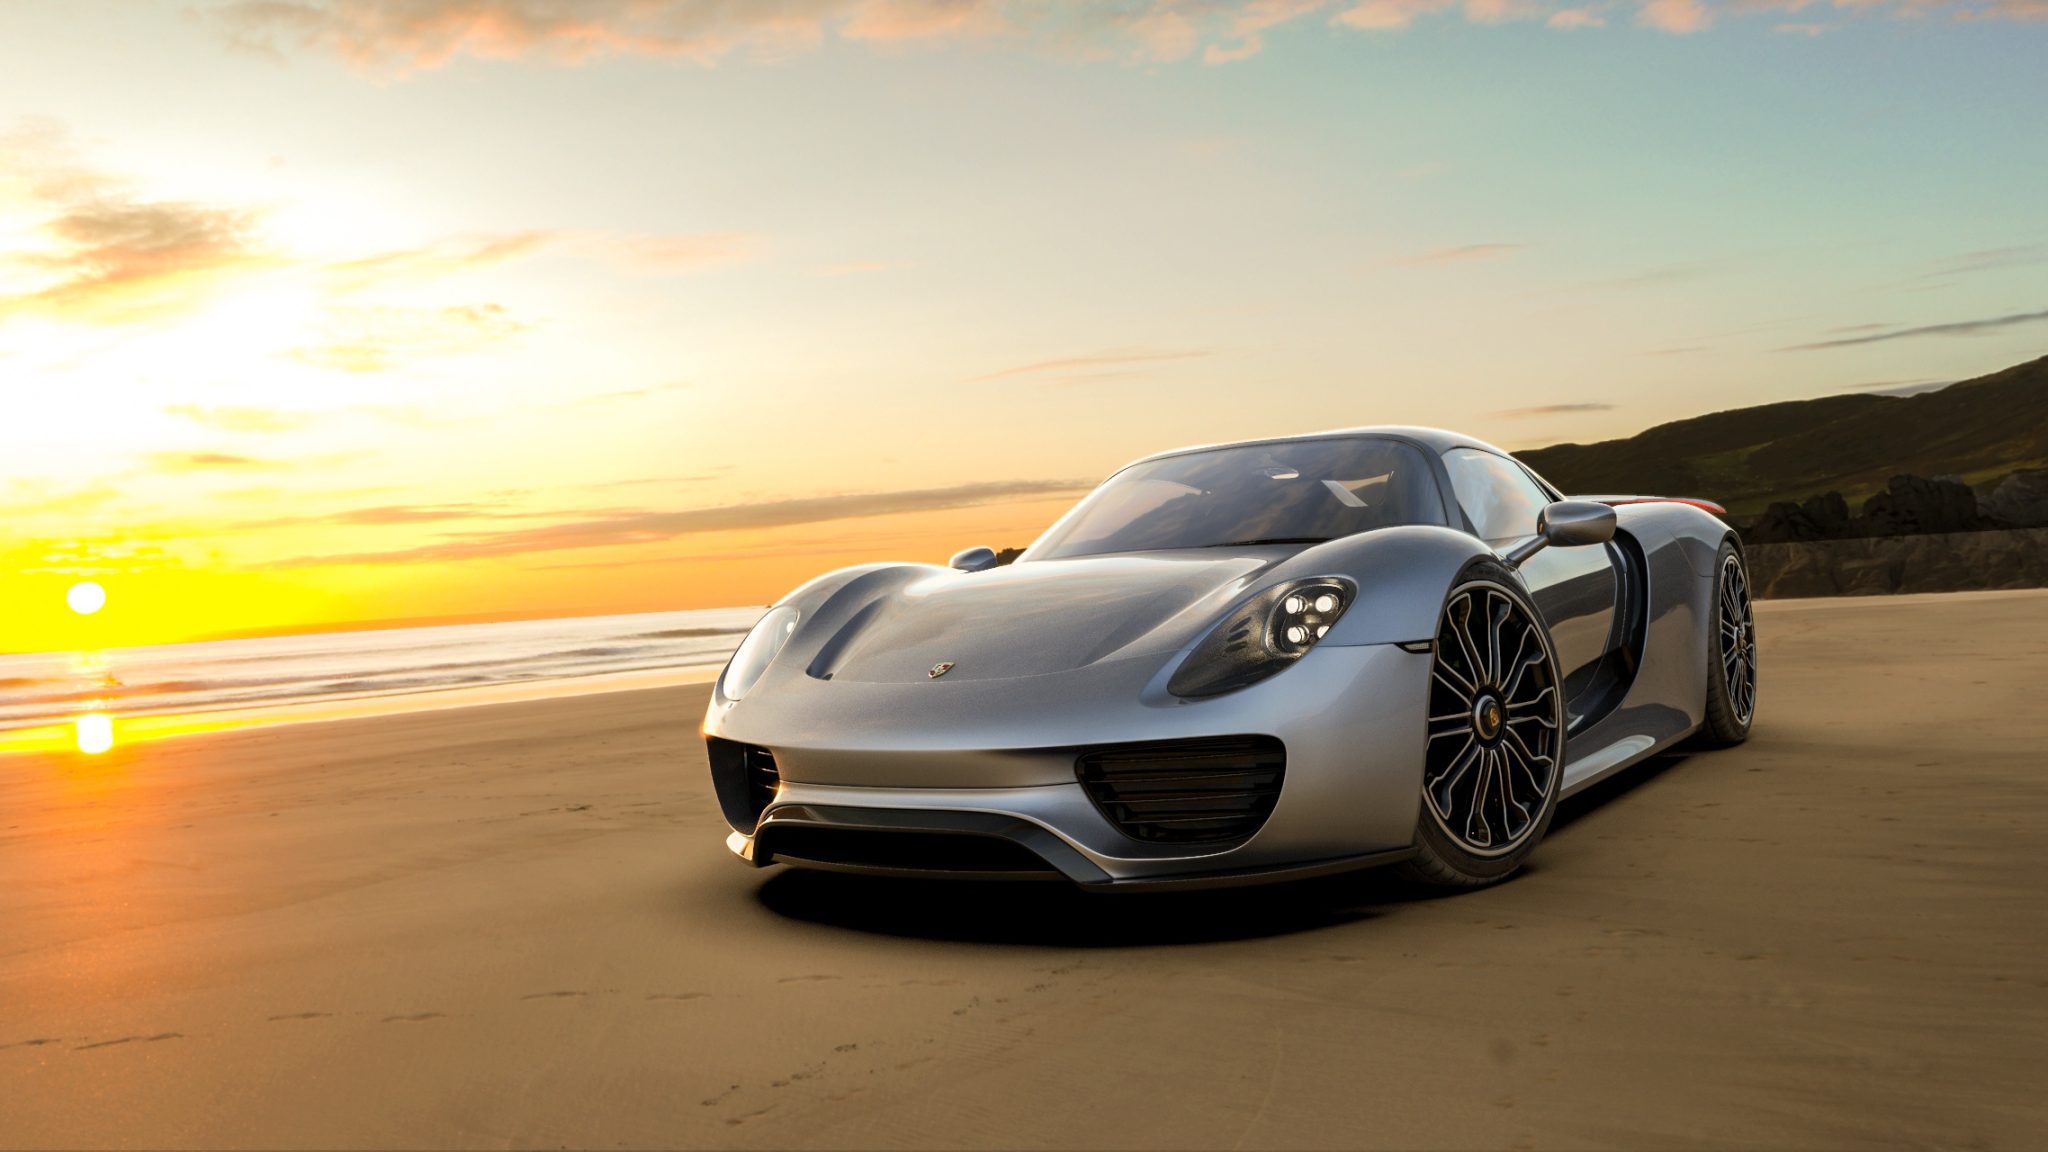 https://www.goodcarbadcar.net/wp-content/uploads/2014/03/Porsche-918-Spyder-scaled.jpeg